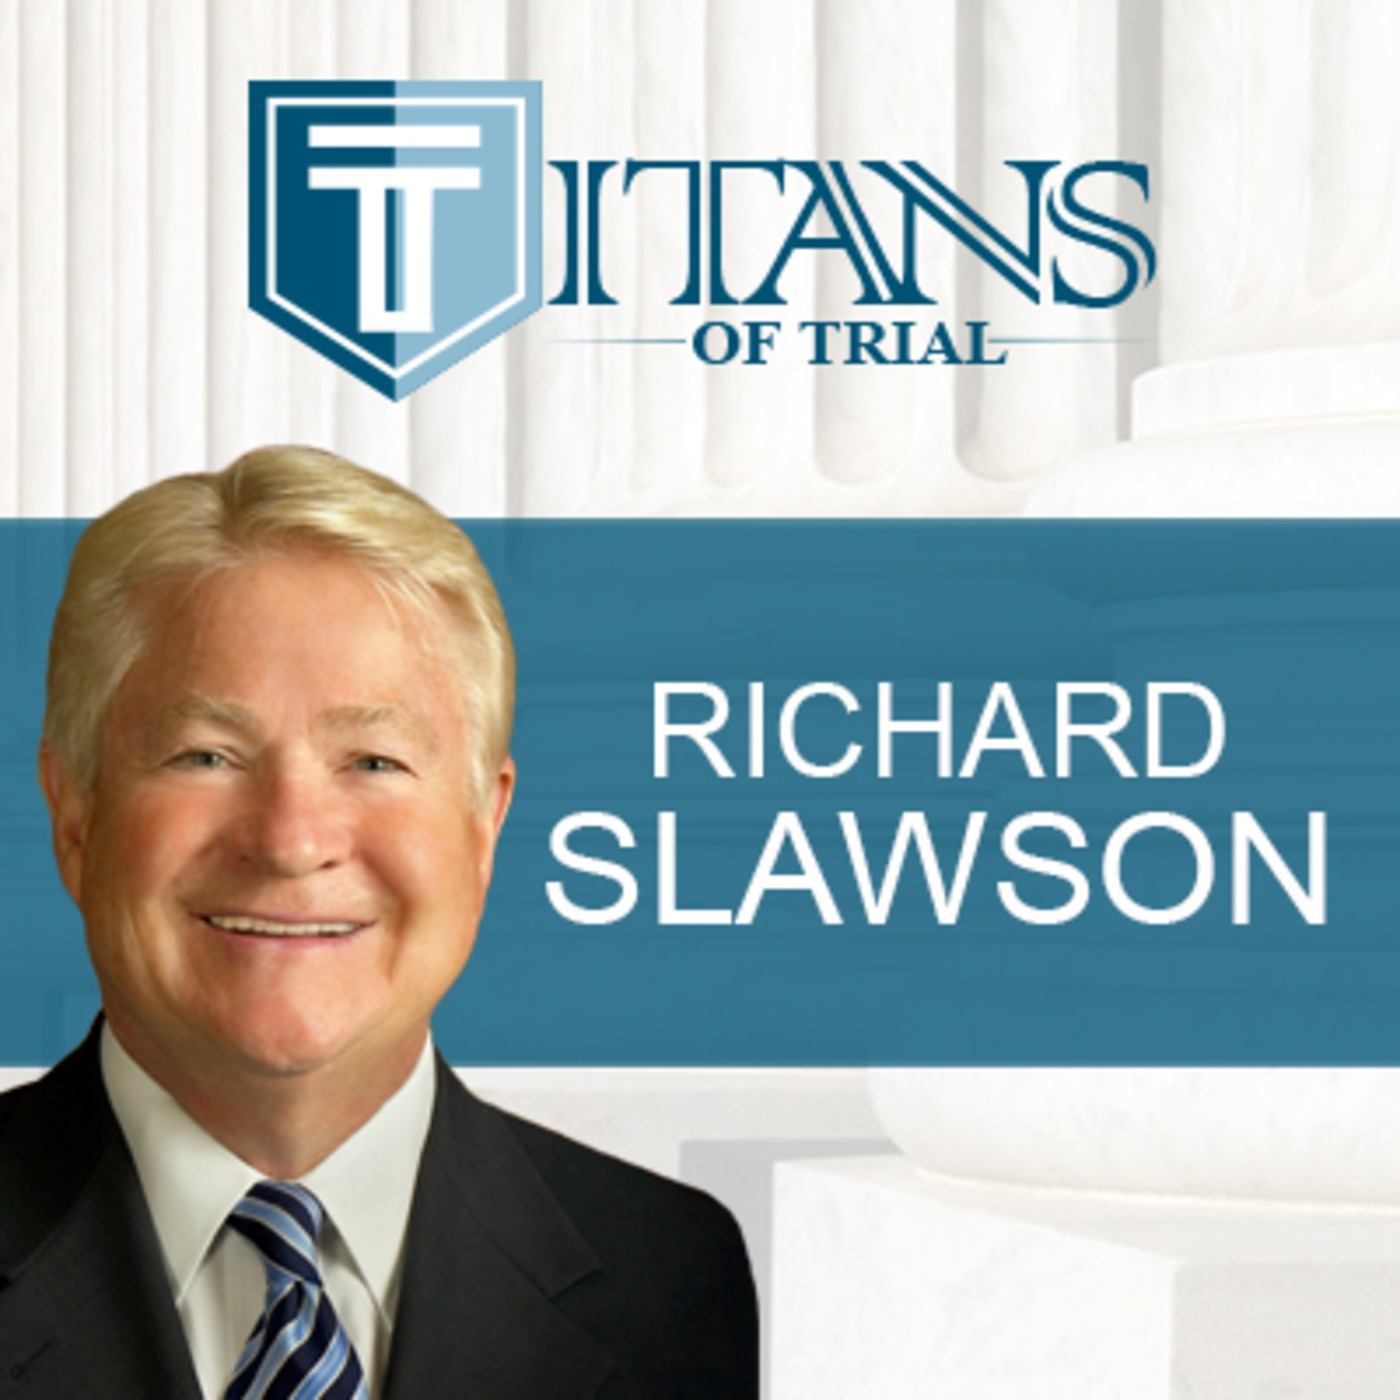 Titans of Trial – Richard Slawson